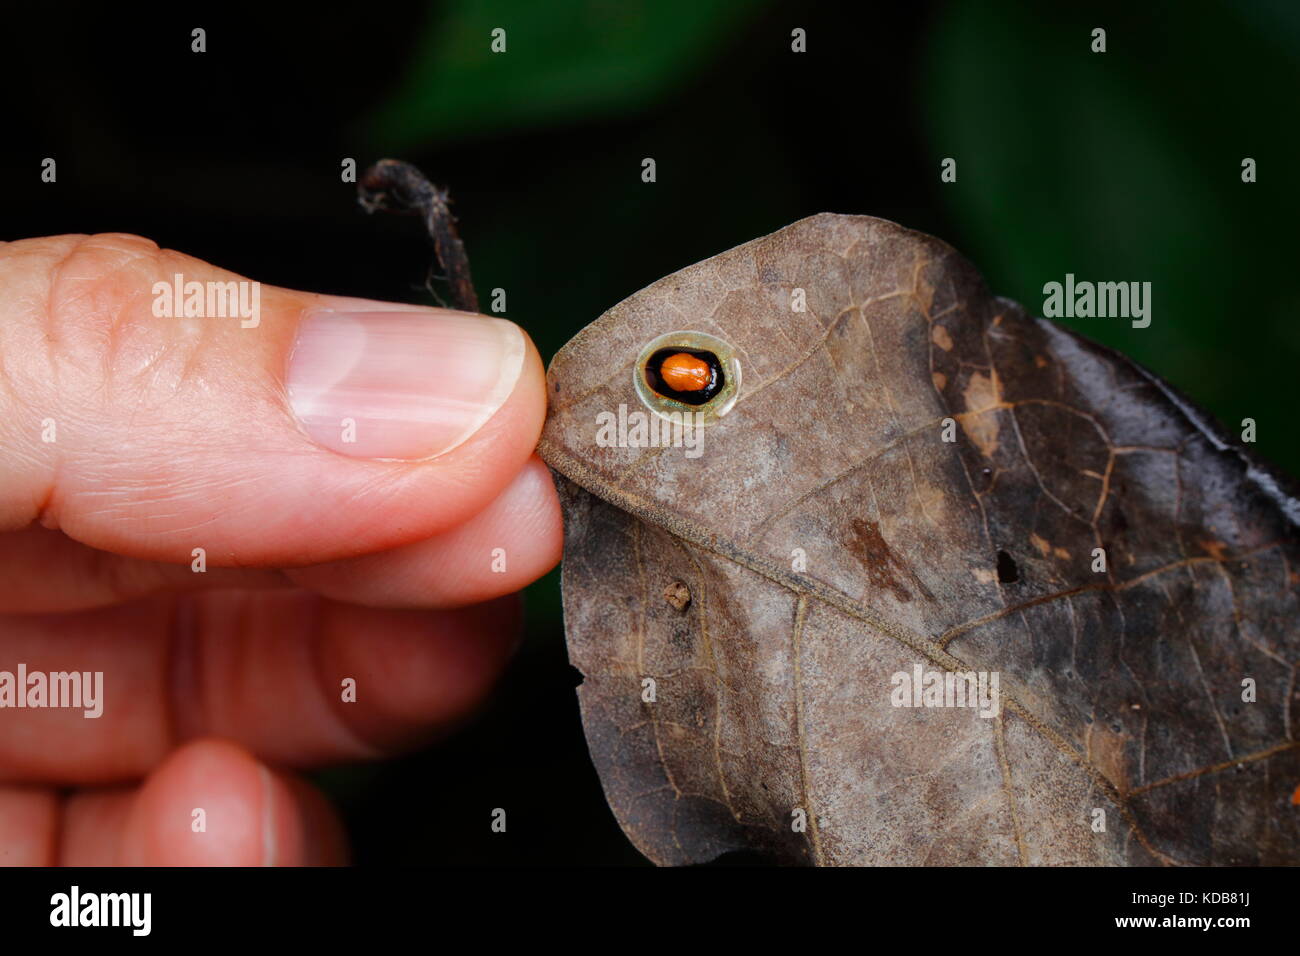 Un pollice umano e una tartaruga guizzanti Beetle, specie Charidotella, strisciando su una foglia. Foto Stock